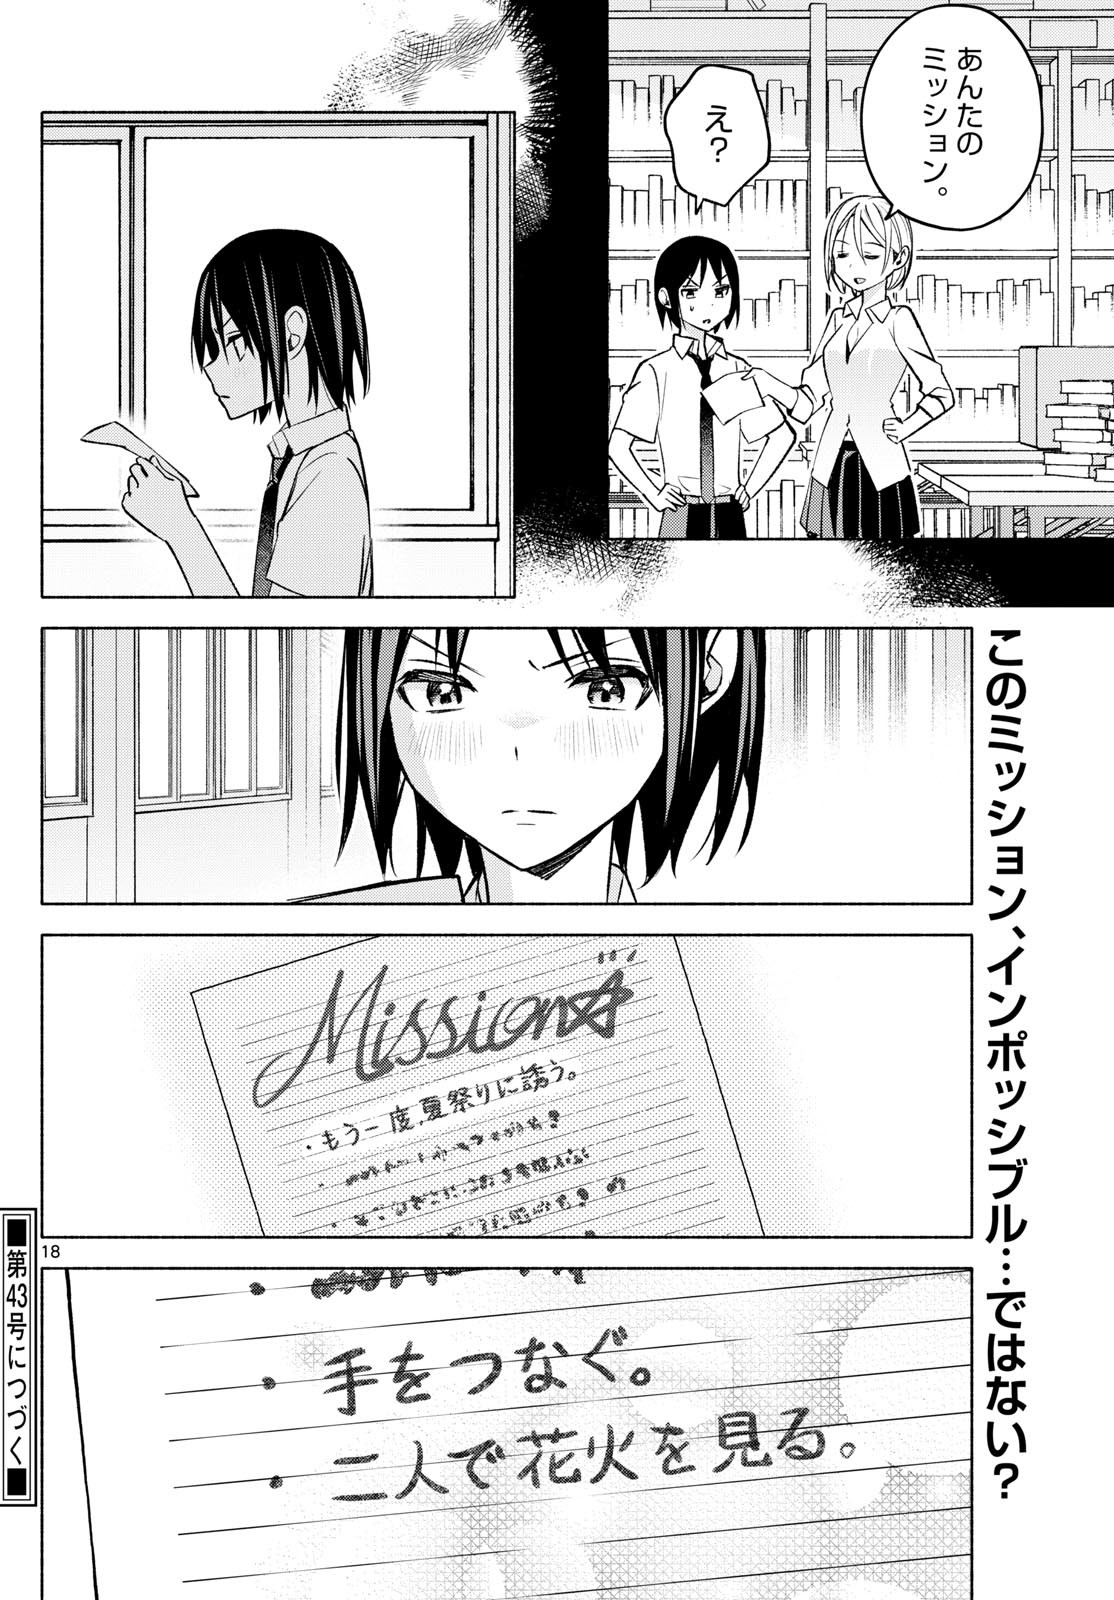 Kimi to Warui Koto ga Shitai - Chapter 043 - Page 18